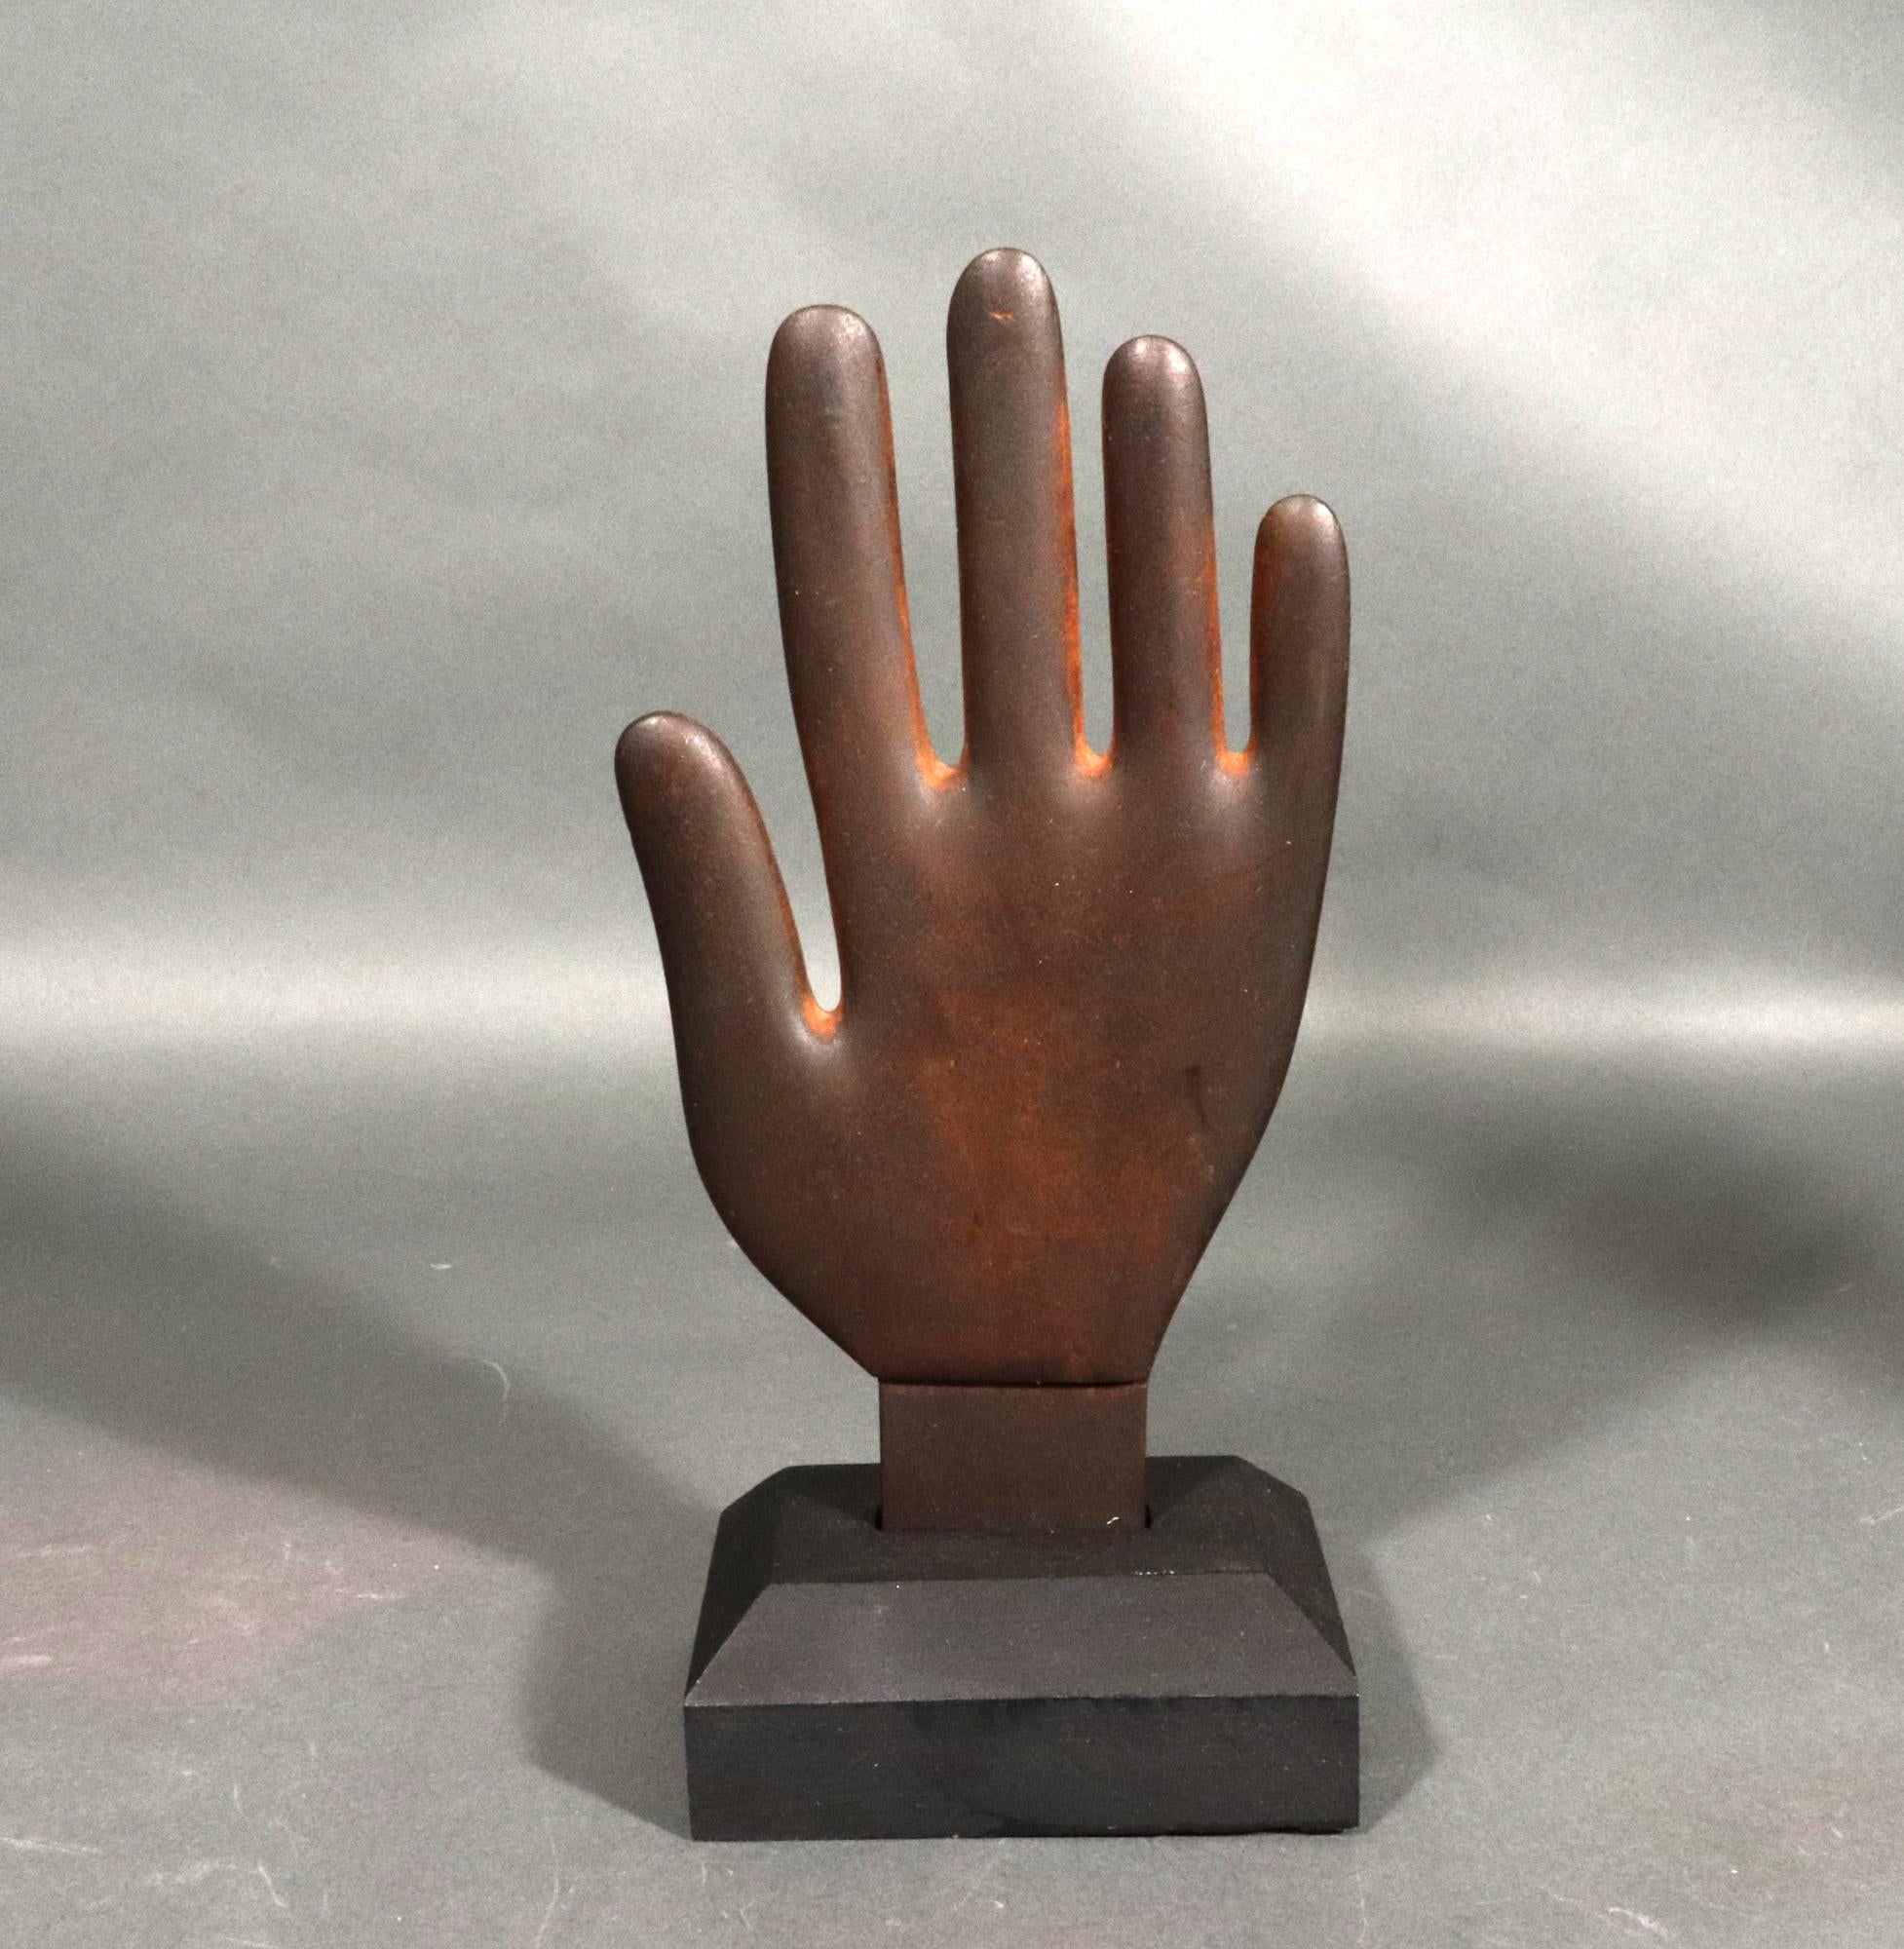 Folk Art Wooden Hand Glove Stretcher,
19. Jahrhundert

Das Holzmodell einer Hand ist auf einen abgestuften Holzsockel montiert. Die Hand hat eine schöne gealterte Farbe und ist ein tolles Stück Volkskunst.

Abmessungen: 10 Zoll x 5 1/2 Zoll x 1/2